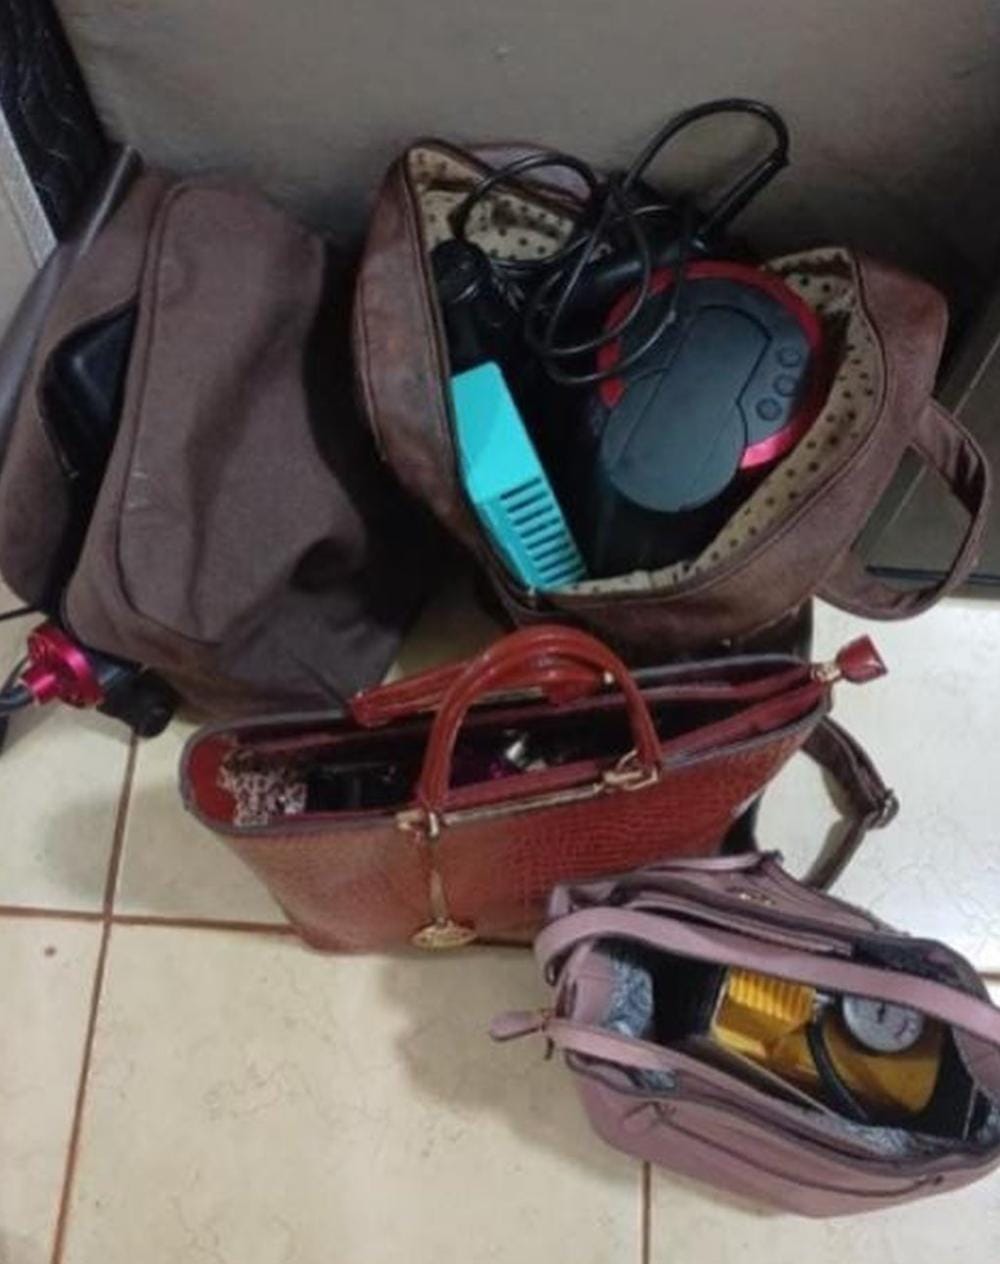 PM recupera diversos objetos e móveis furtados em residência no Sudoeste goiano 